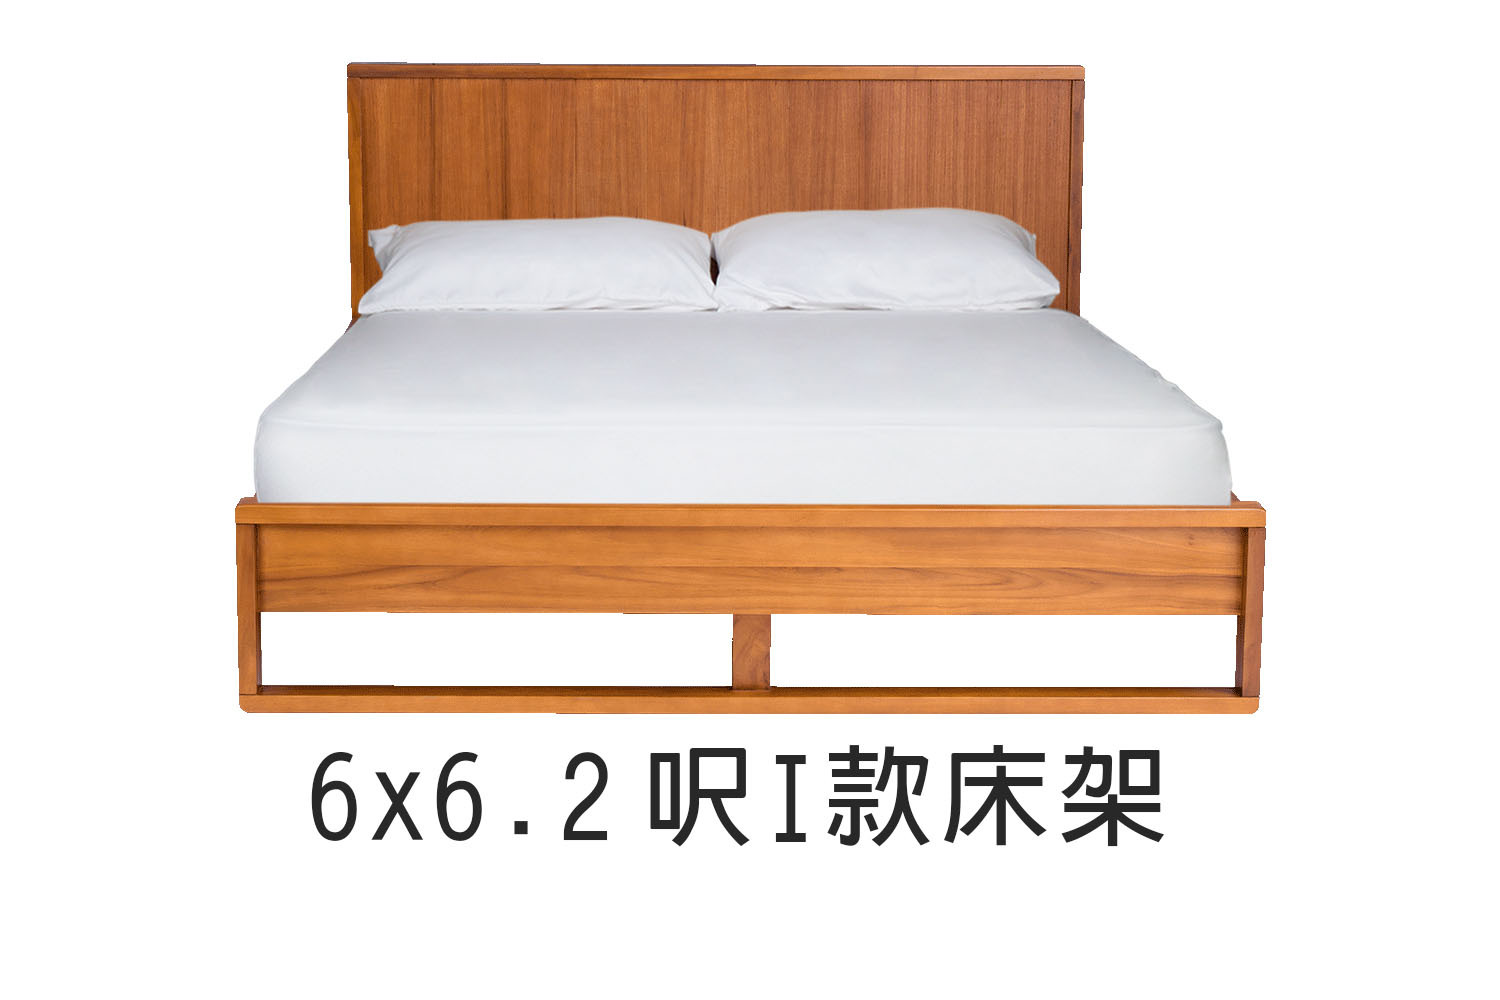 北歐風6x6.2呎I款雙人實木床架 WMBS43T1